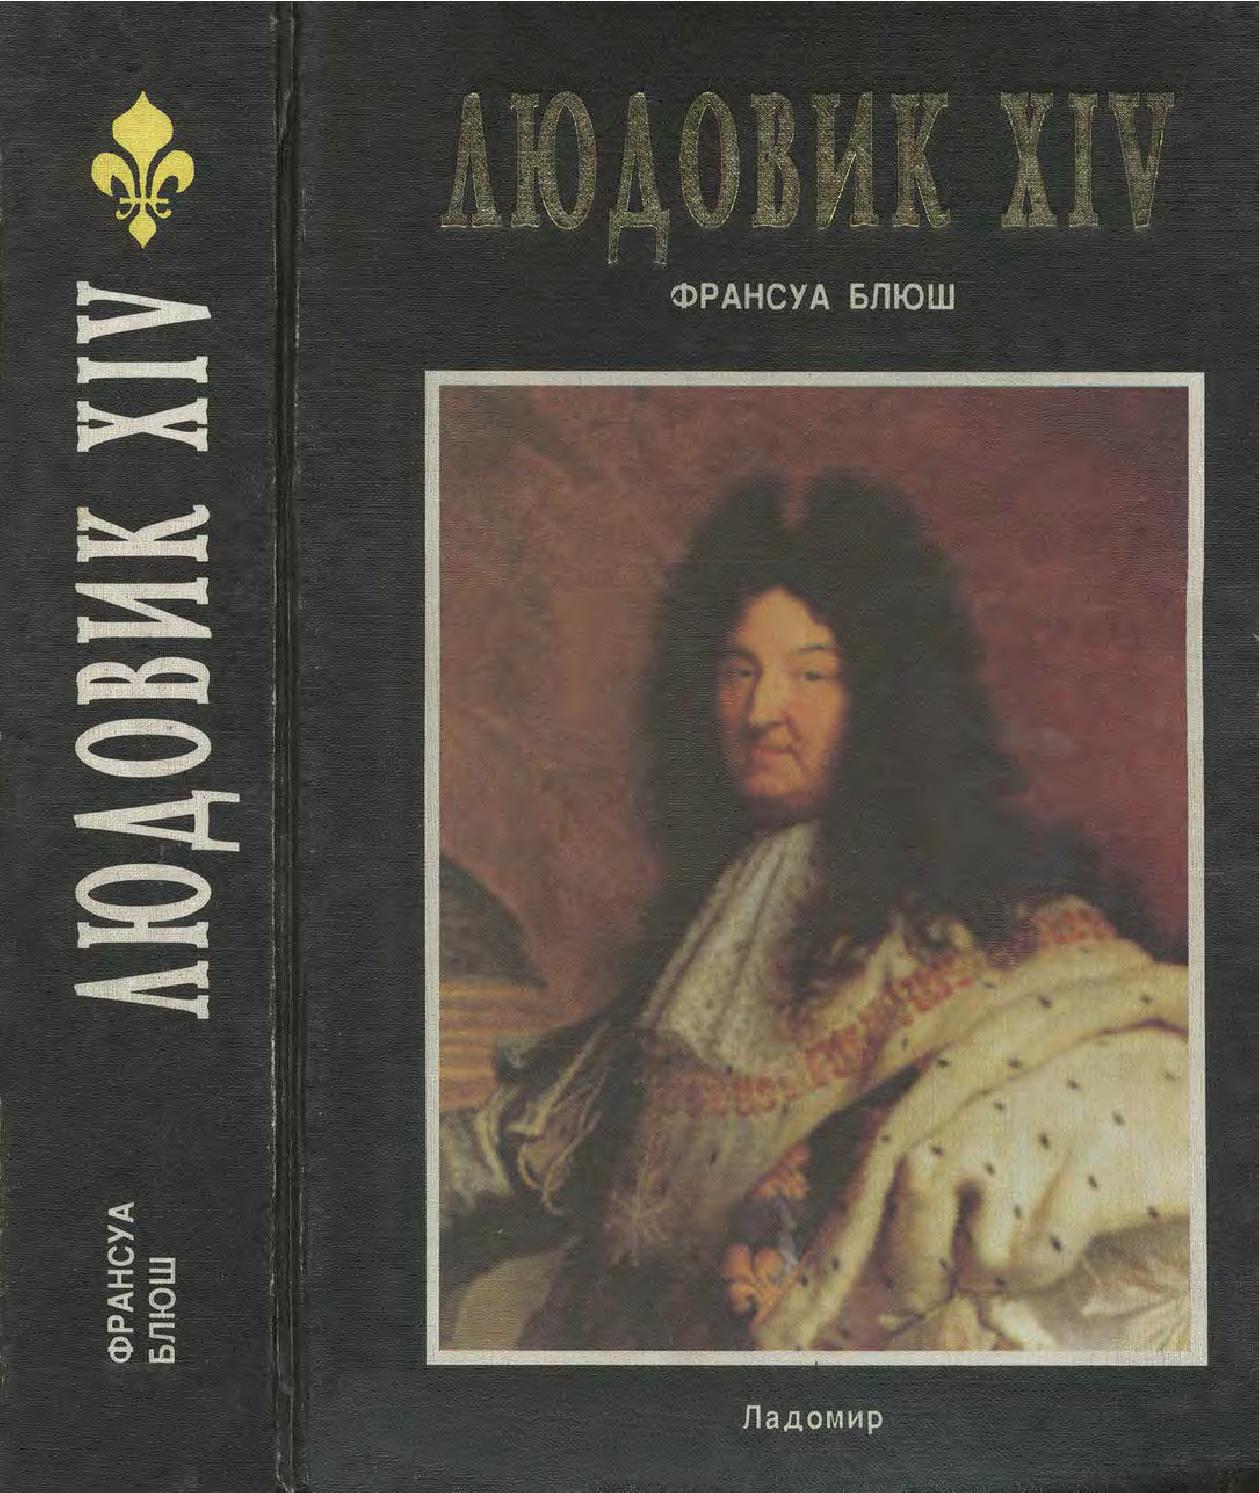 Людовик XIV. Часть-1, 1998, Блюш Франсуа